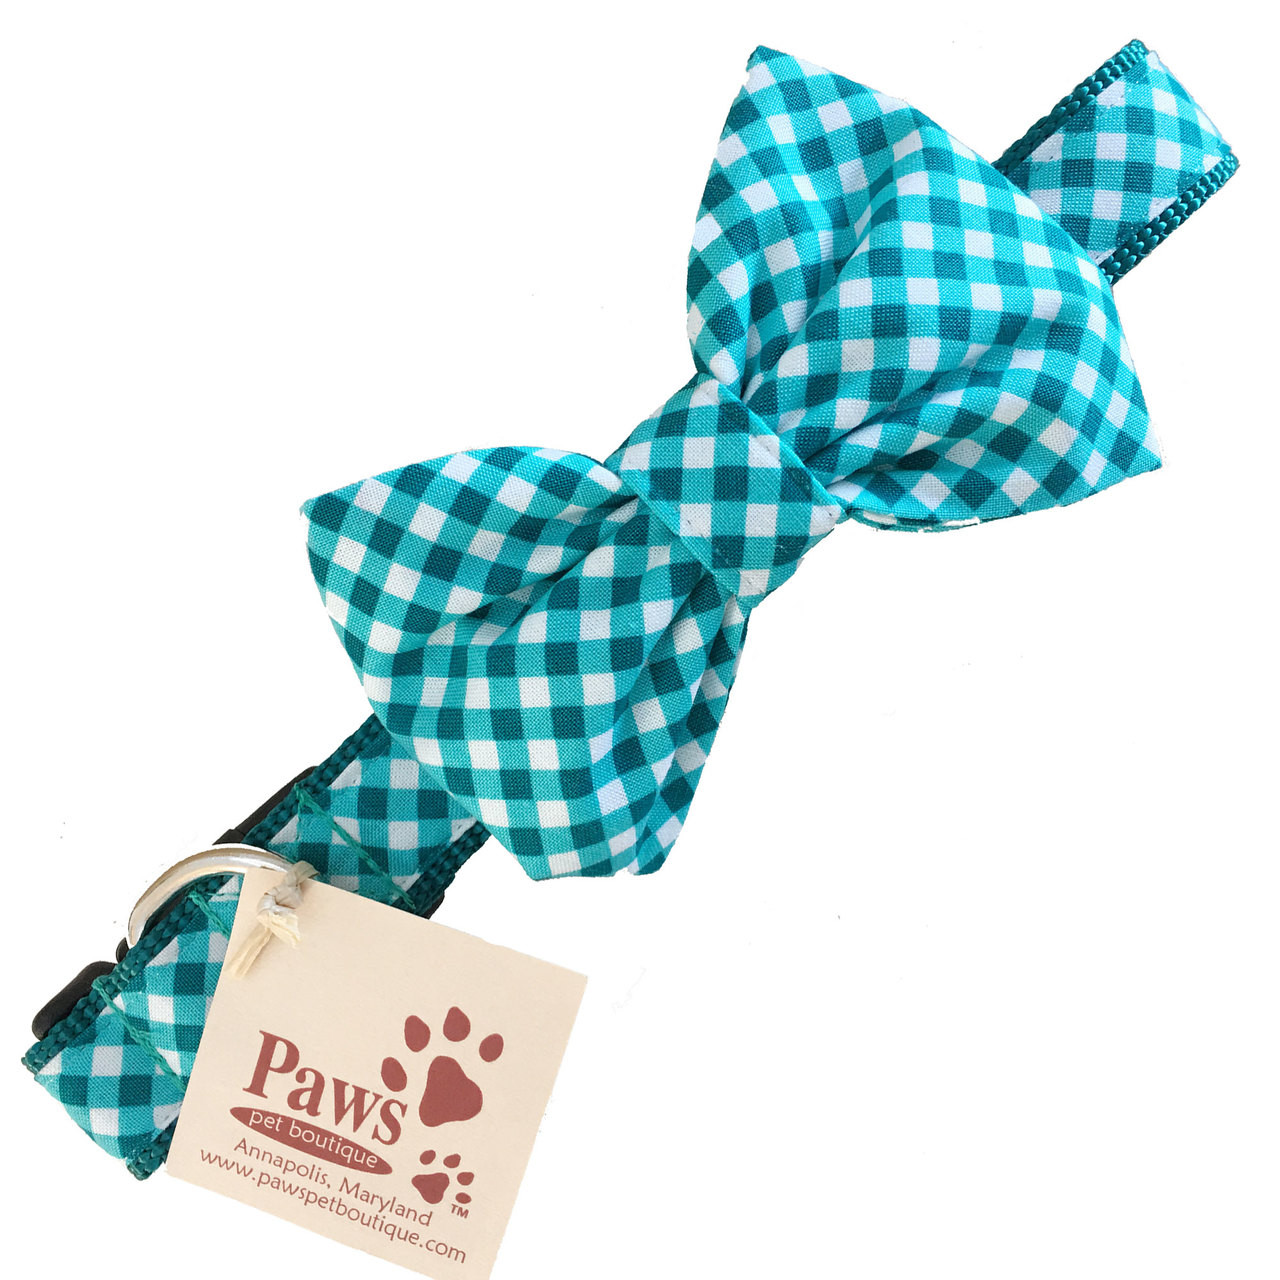 bow tie dog collar